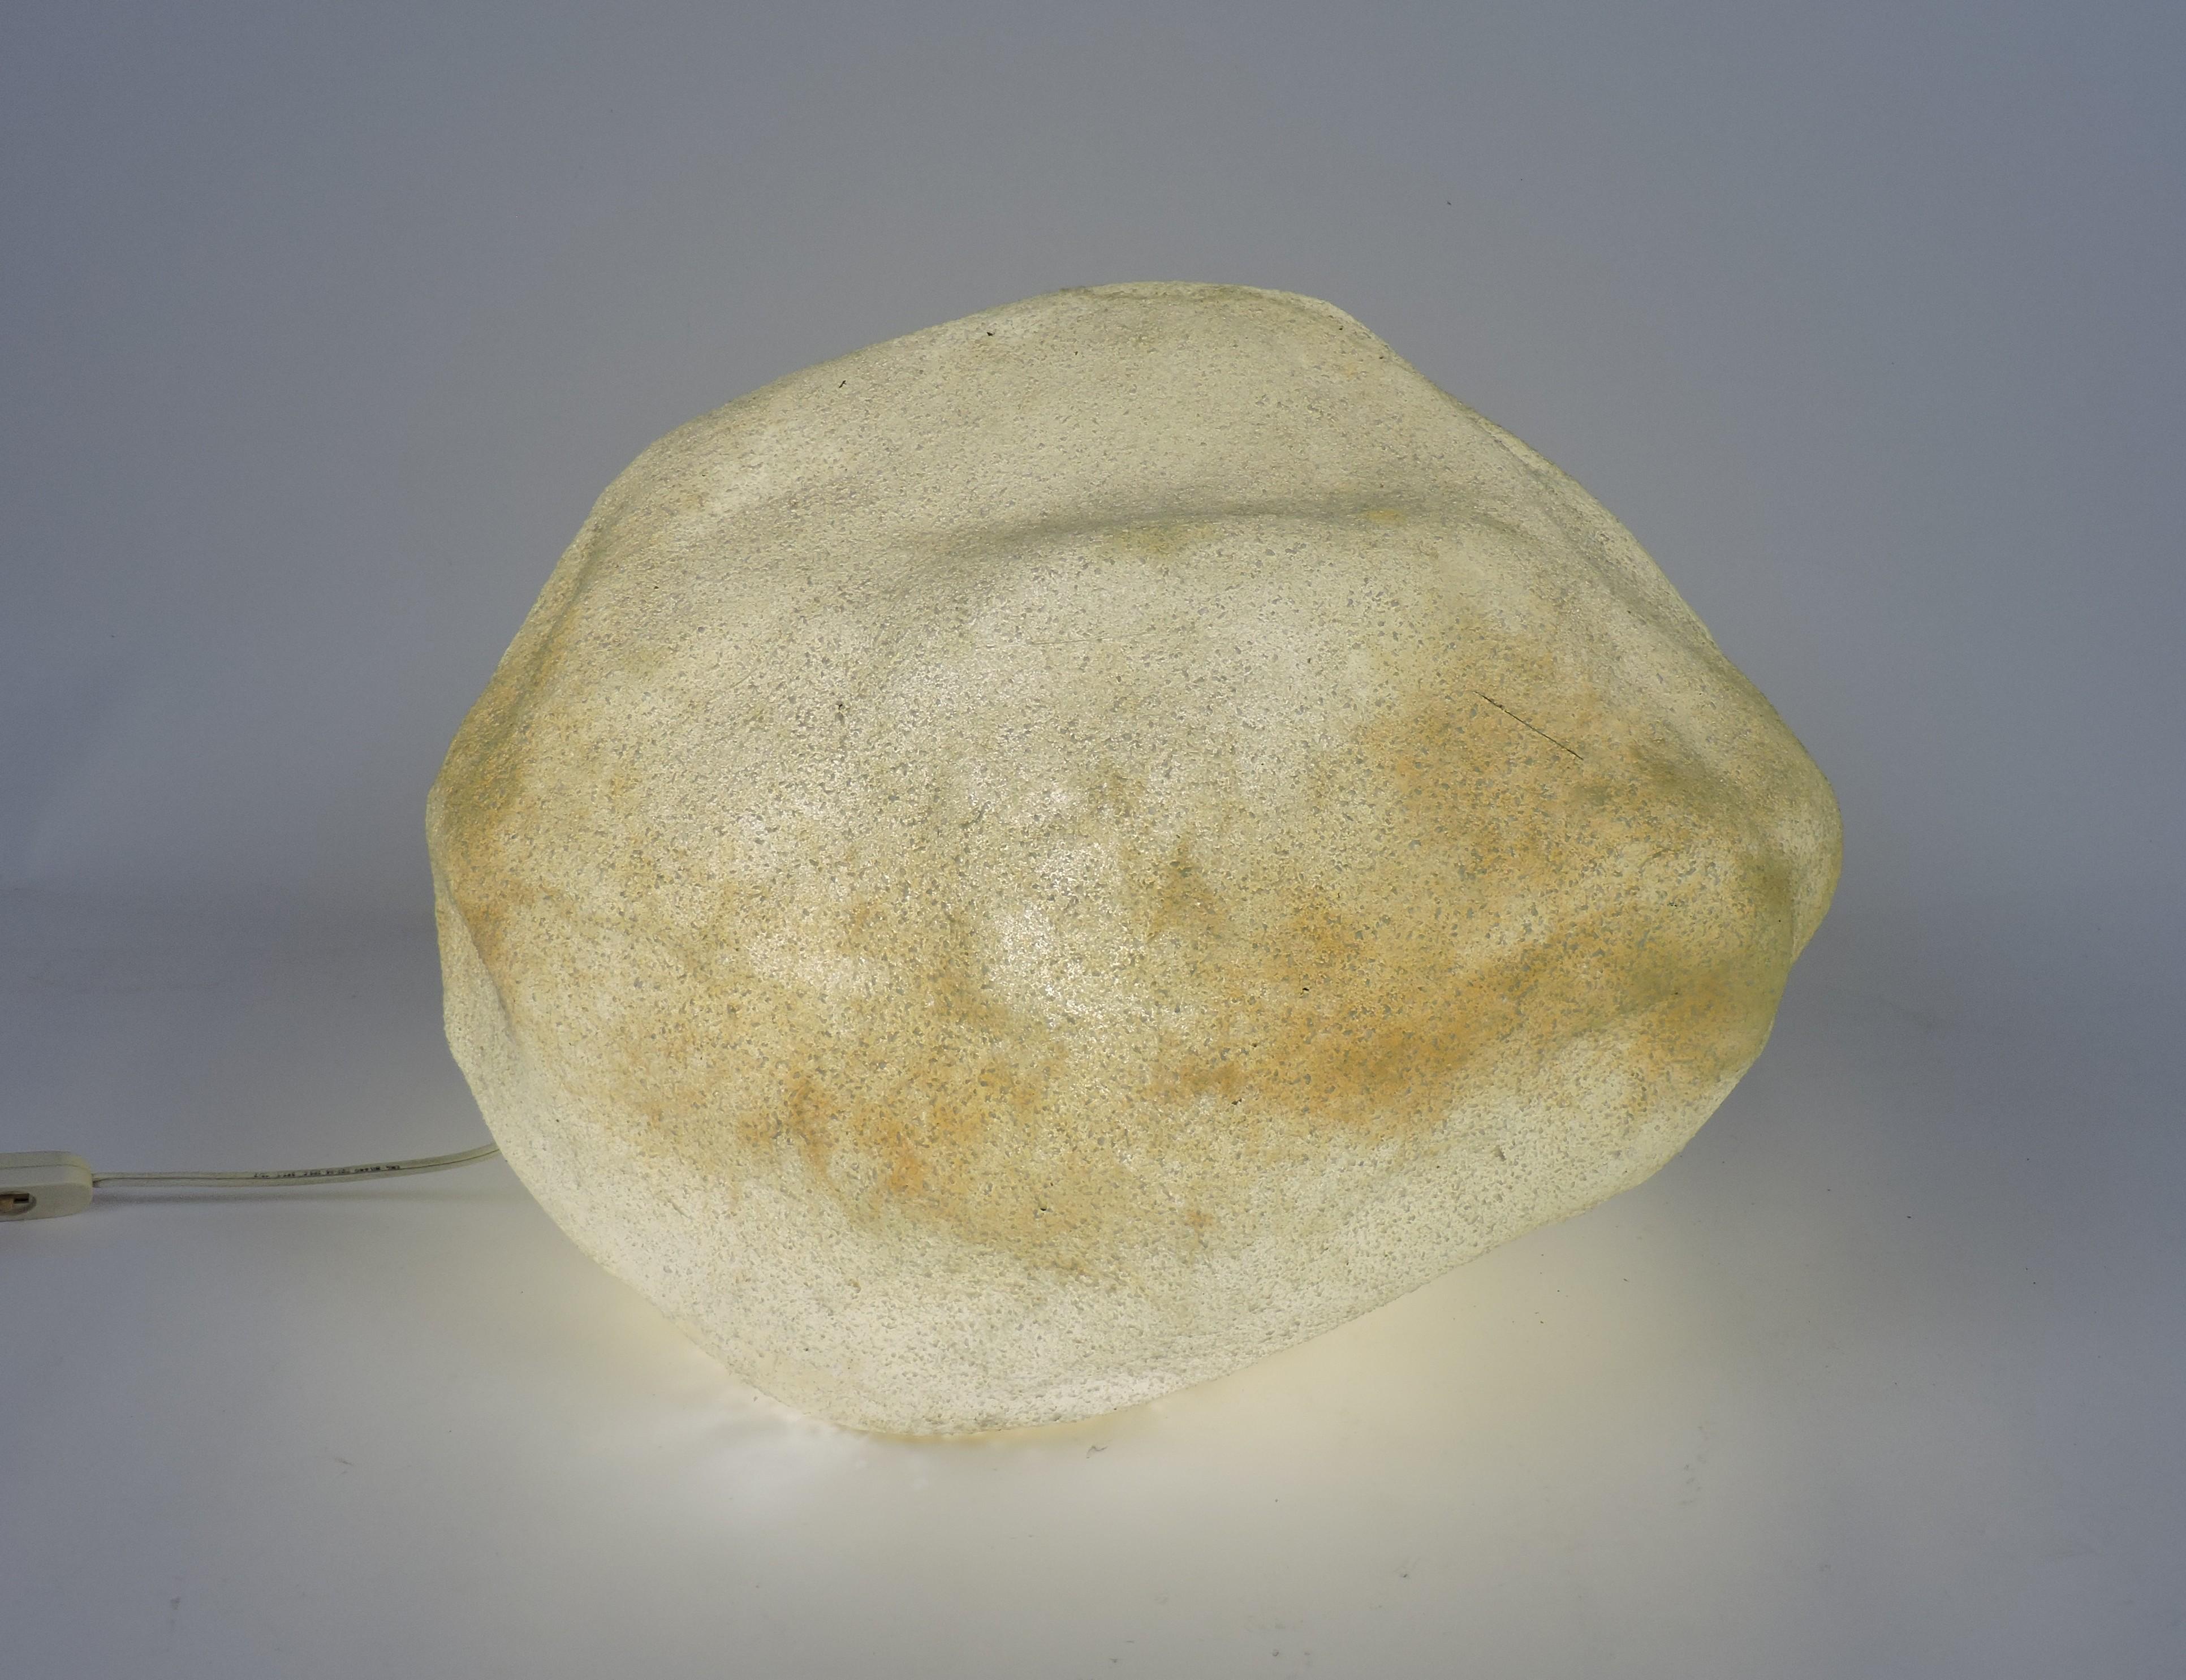 Sehr cooler leuchtender Mondstein, entworfen von Andre Cazenave und in den 1970er Jahren von Singleton in Italien hergestellt. Diese Lampe ist aus durchscheinendem Harz mit Marmorpulvereinschlüssen gefertigt und leuchtet mit einem sanften